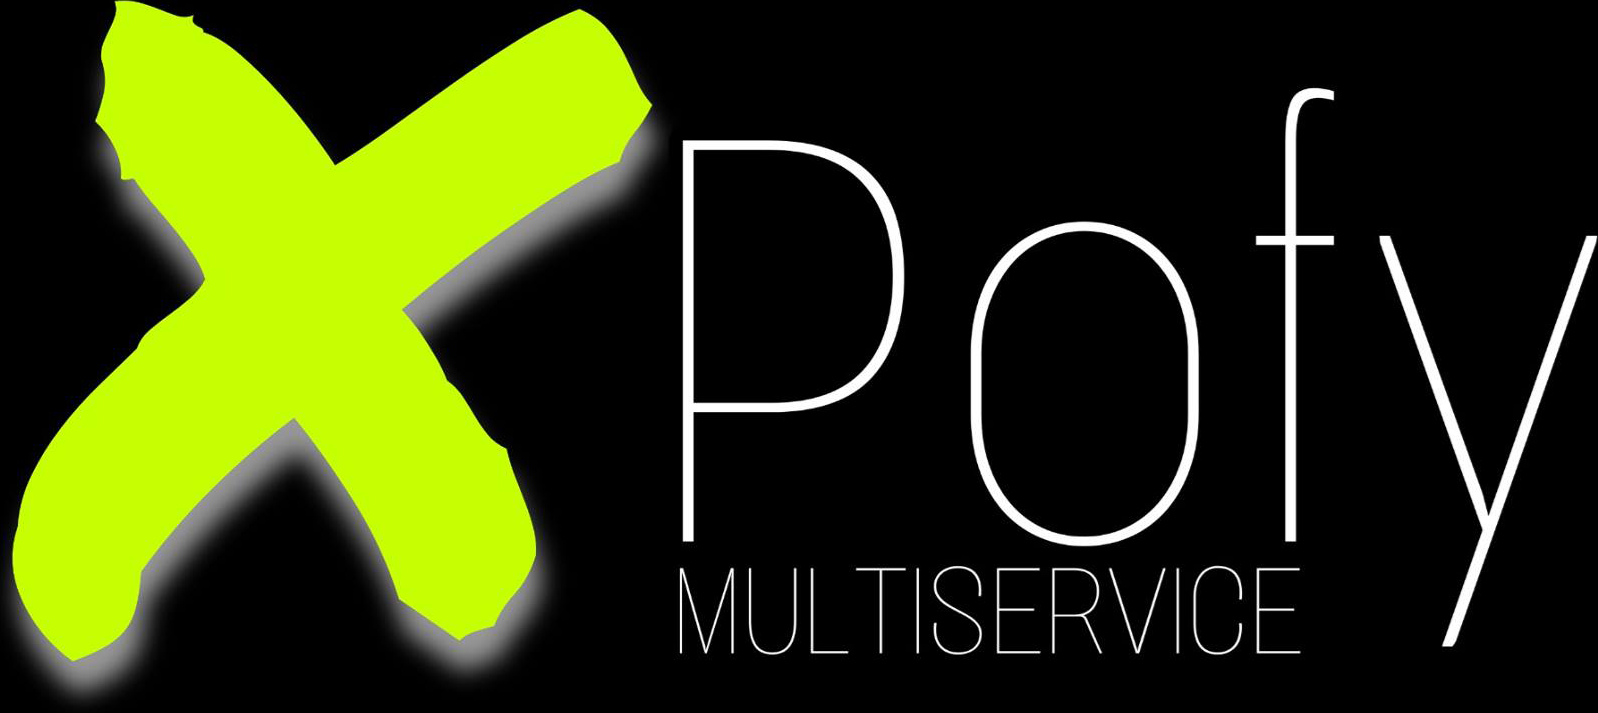 Xpofy multiservice varetager opgaver inden for blandt andet brolægning og nedrivning i Greve, Køge, Roskilde og København